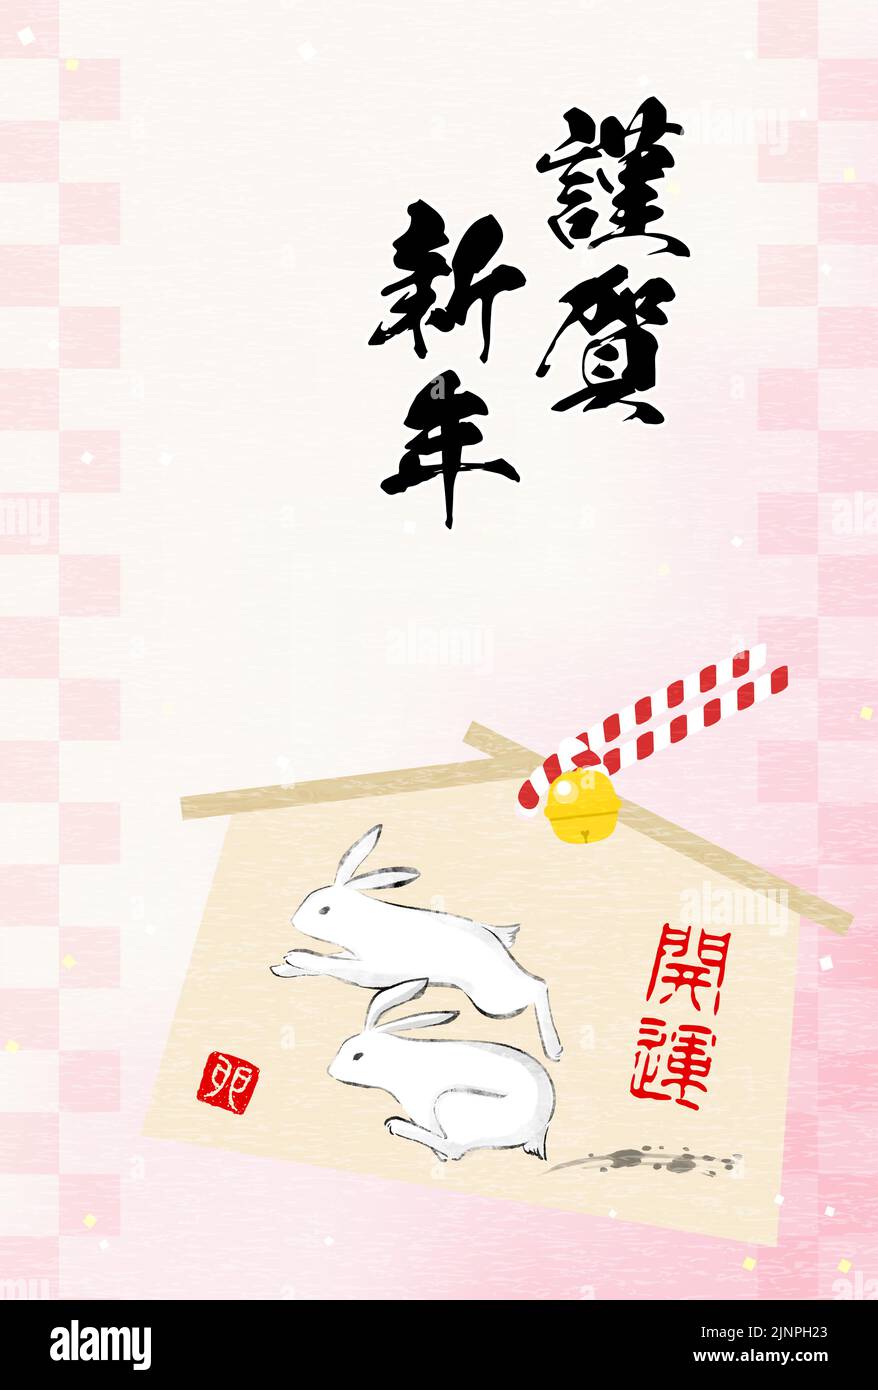 Carta di Capodanno giapponese per l'anno del coniglio 2023, con un ema coniglio in esecuzione e sfondo rosa modello giapponese, inchiostro stile pittura - Transla Illustrazione Vettoriale